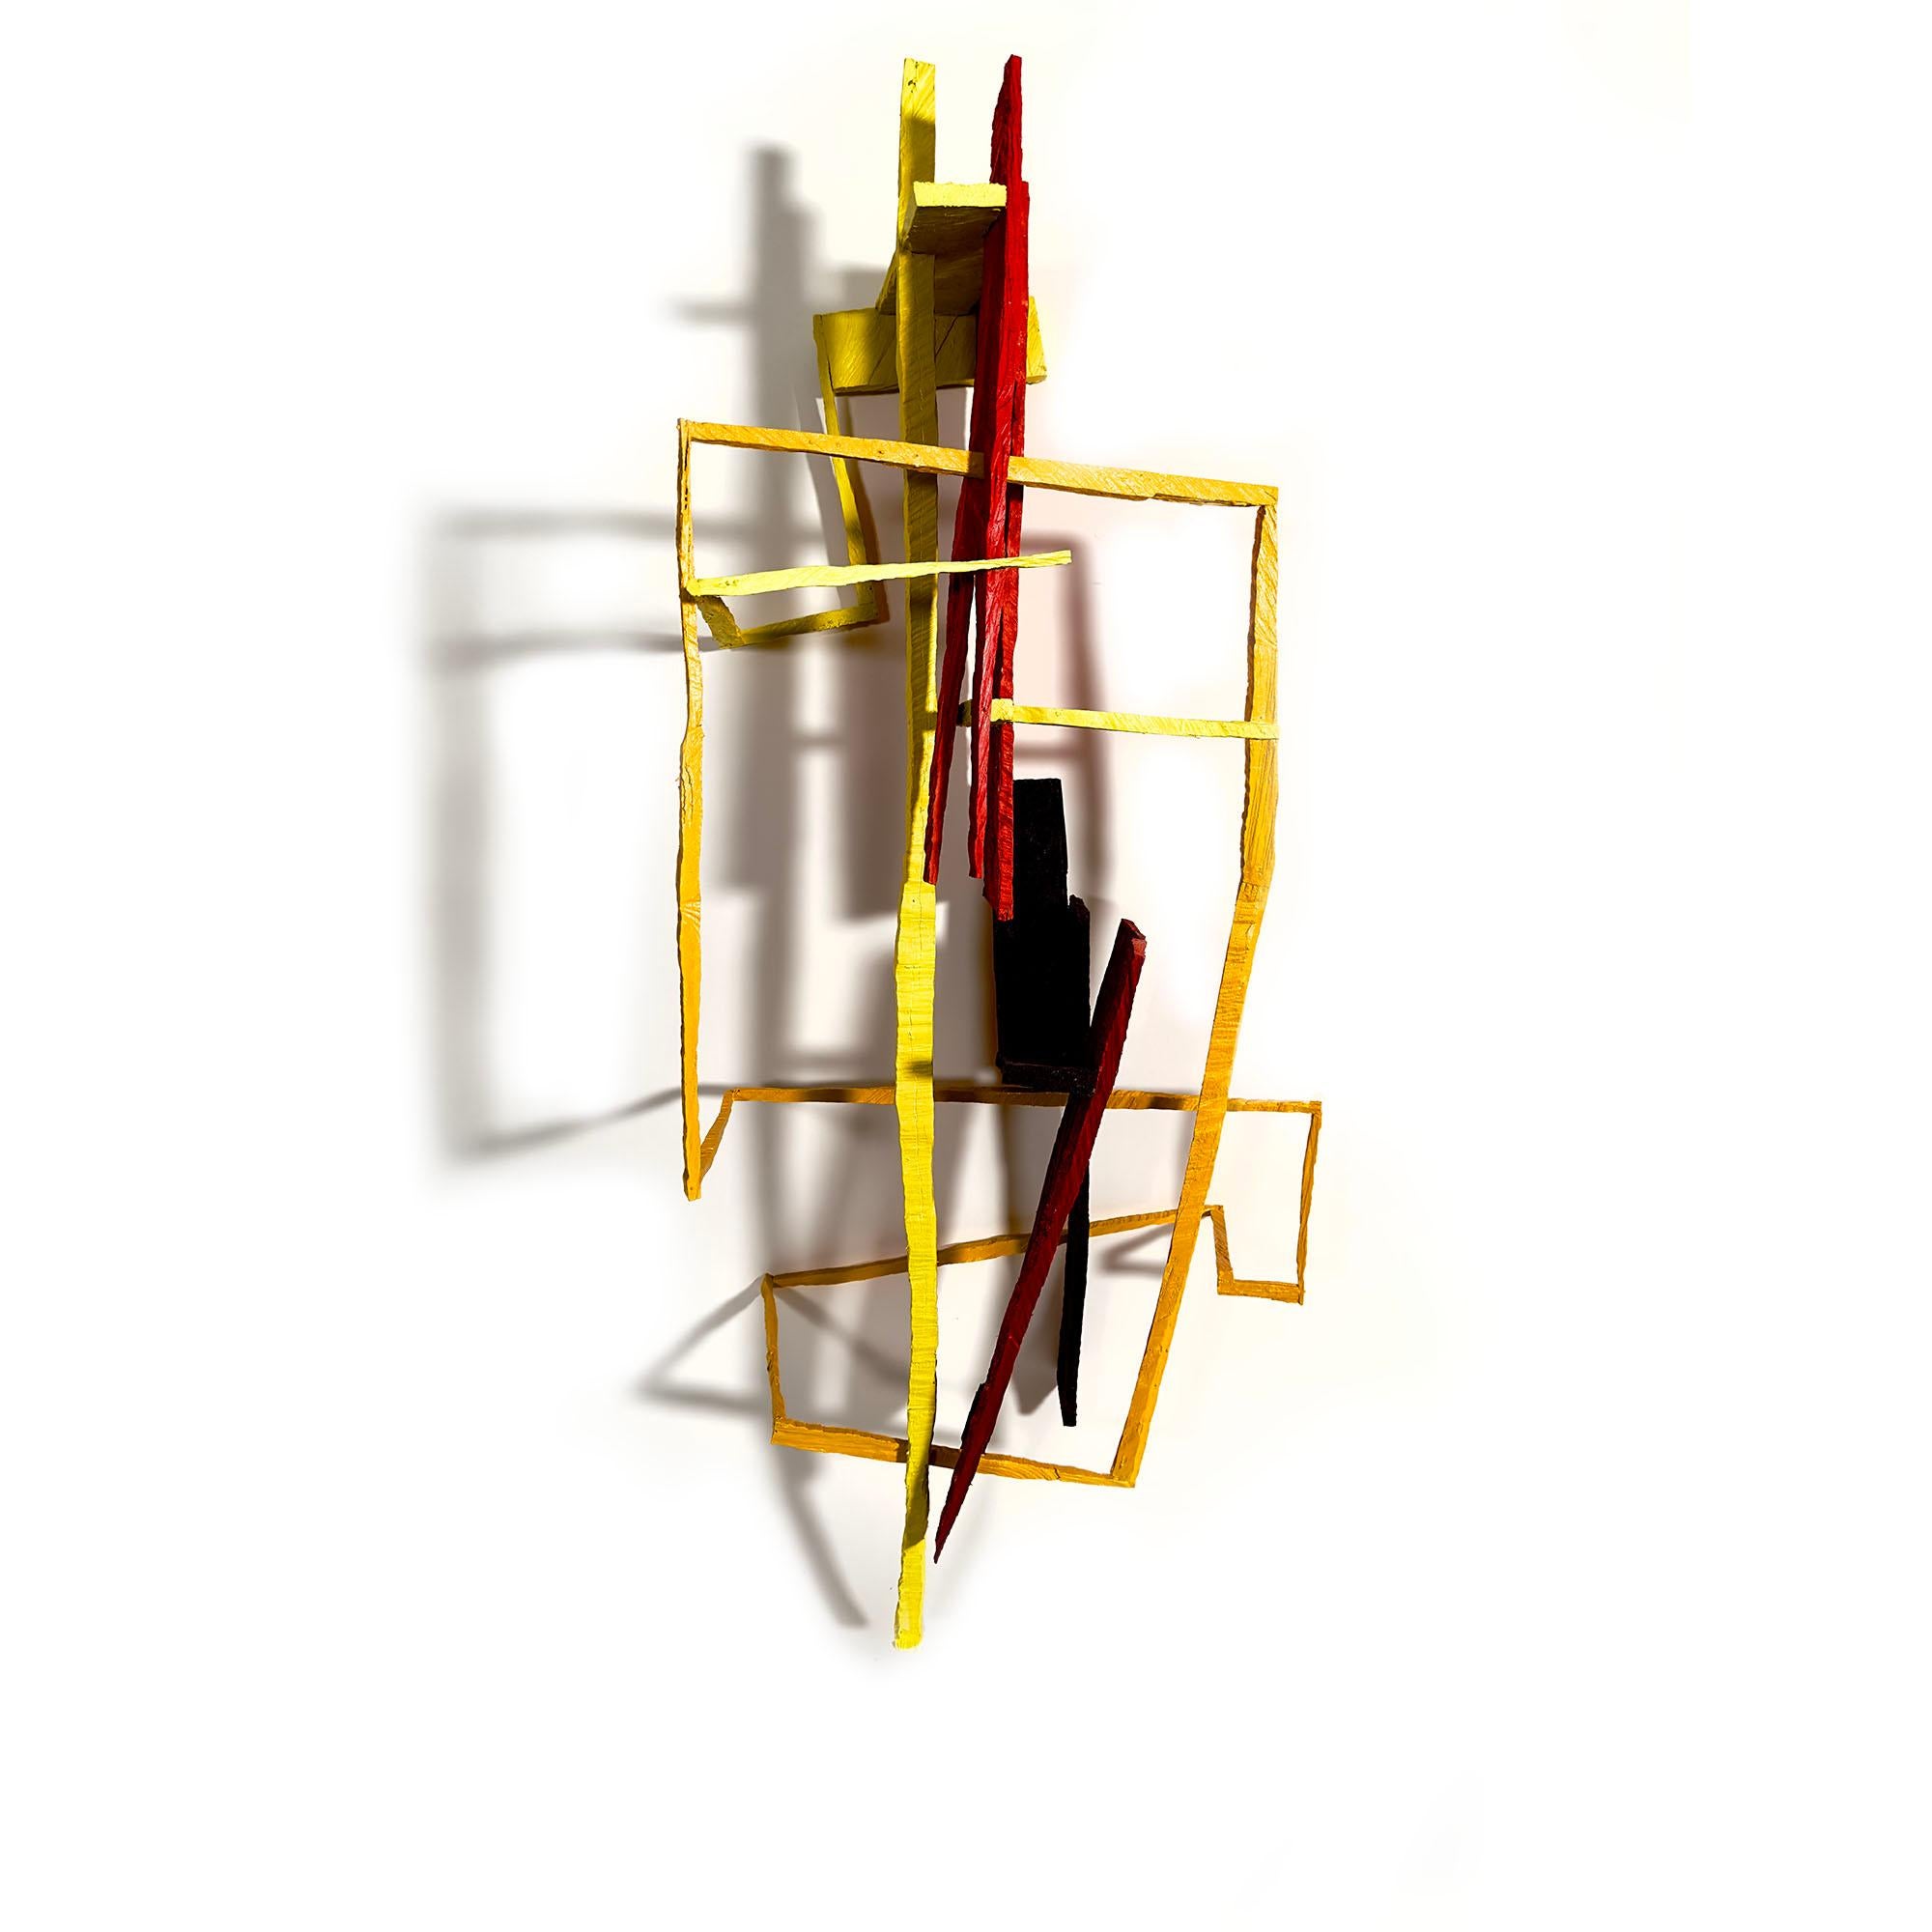 Joe Sultan Abstract Sculpture – Jetzt sehen Sie es, abstrakte geometrische Holzskulptur